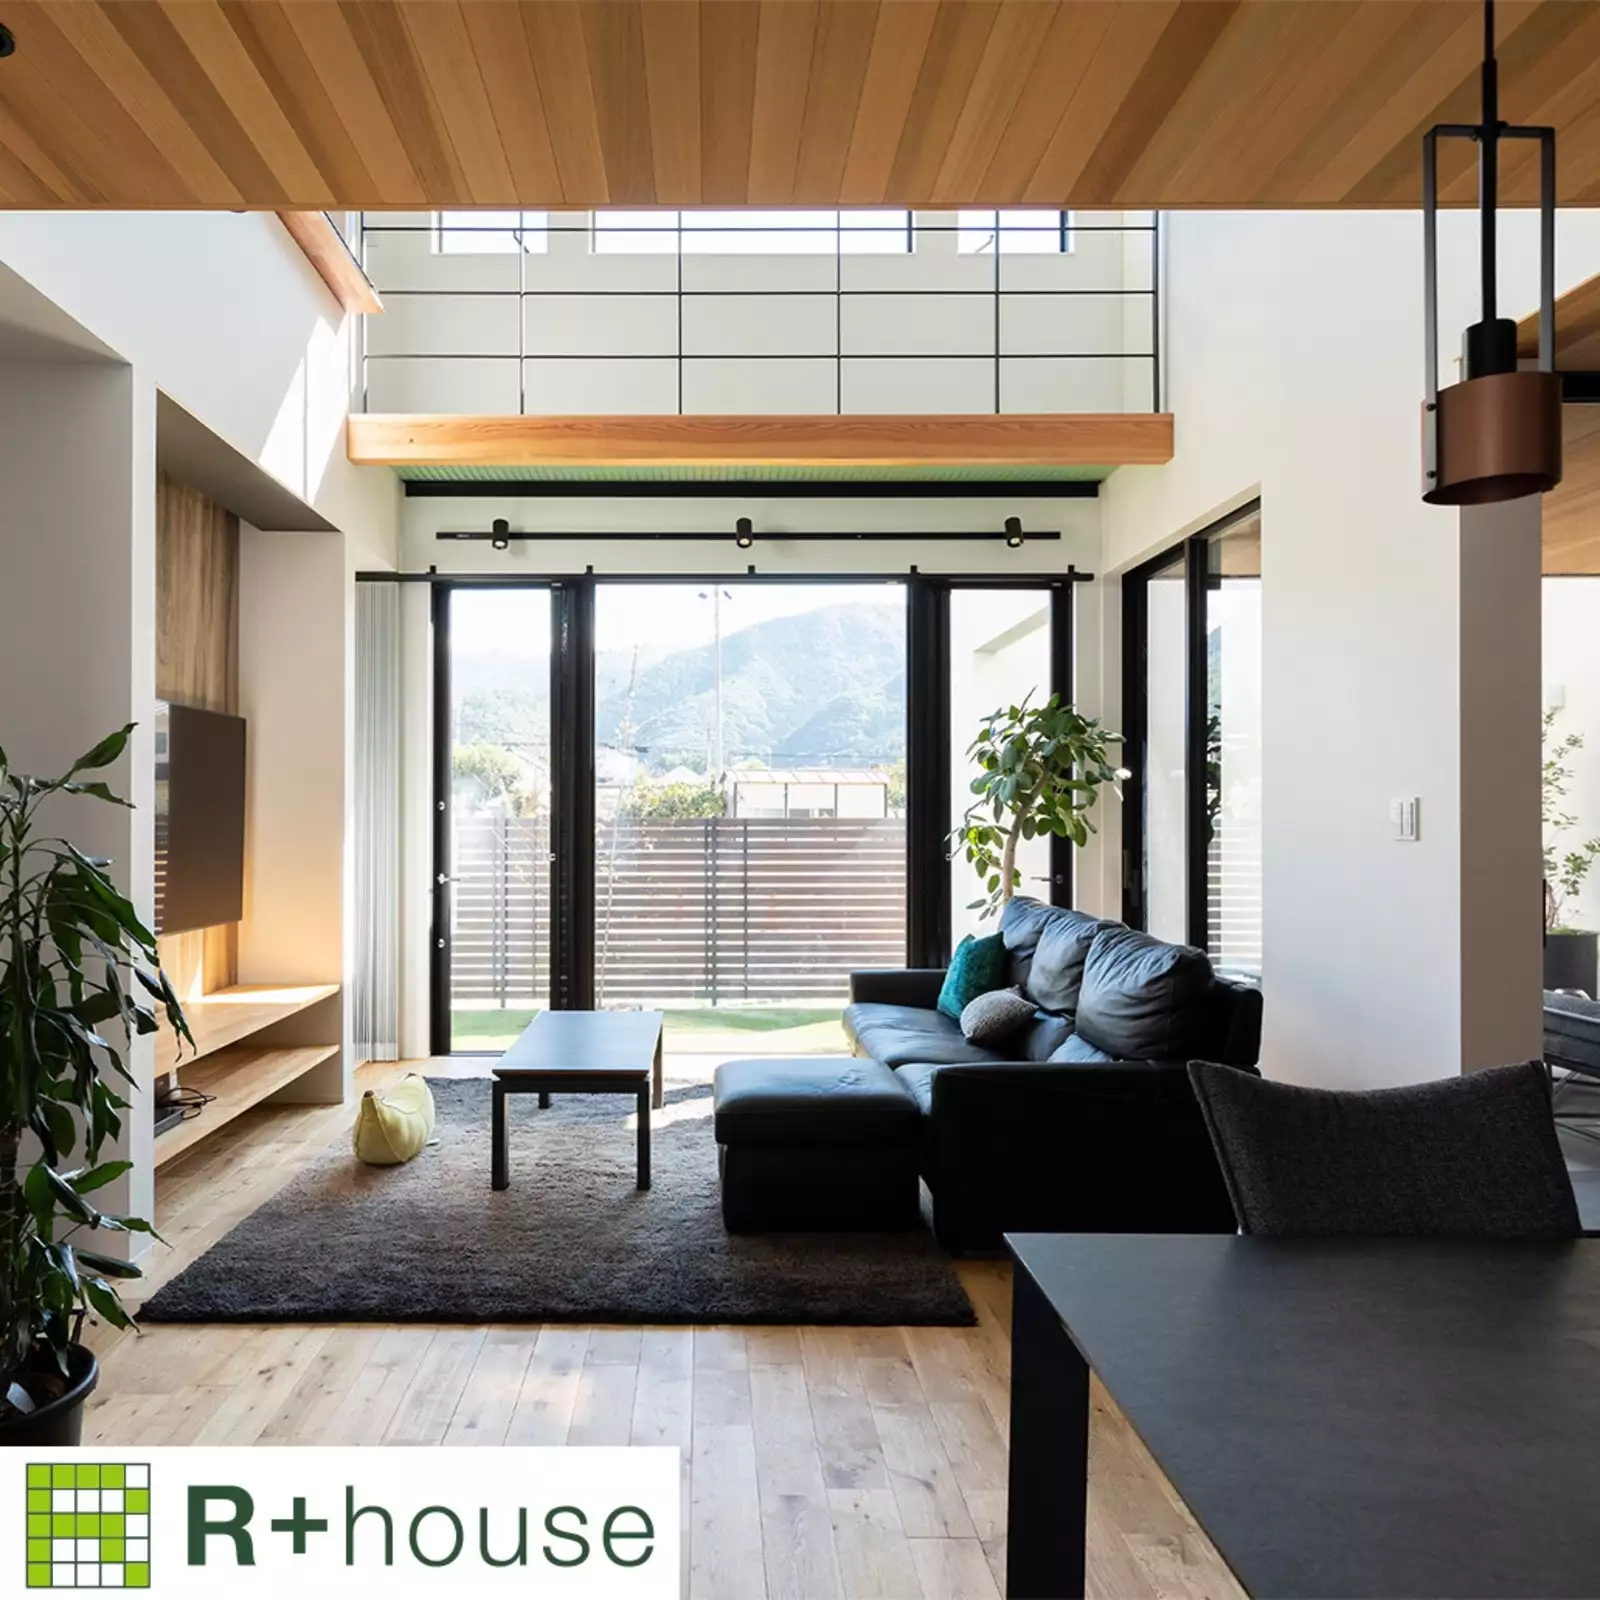 R+houseの物件のリビングの写真です。左側に壁かけテレビ、右側にソファー。奥にある窓からは芝の庭が見え、吹き抜け越しには山々を遠望できる。